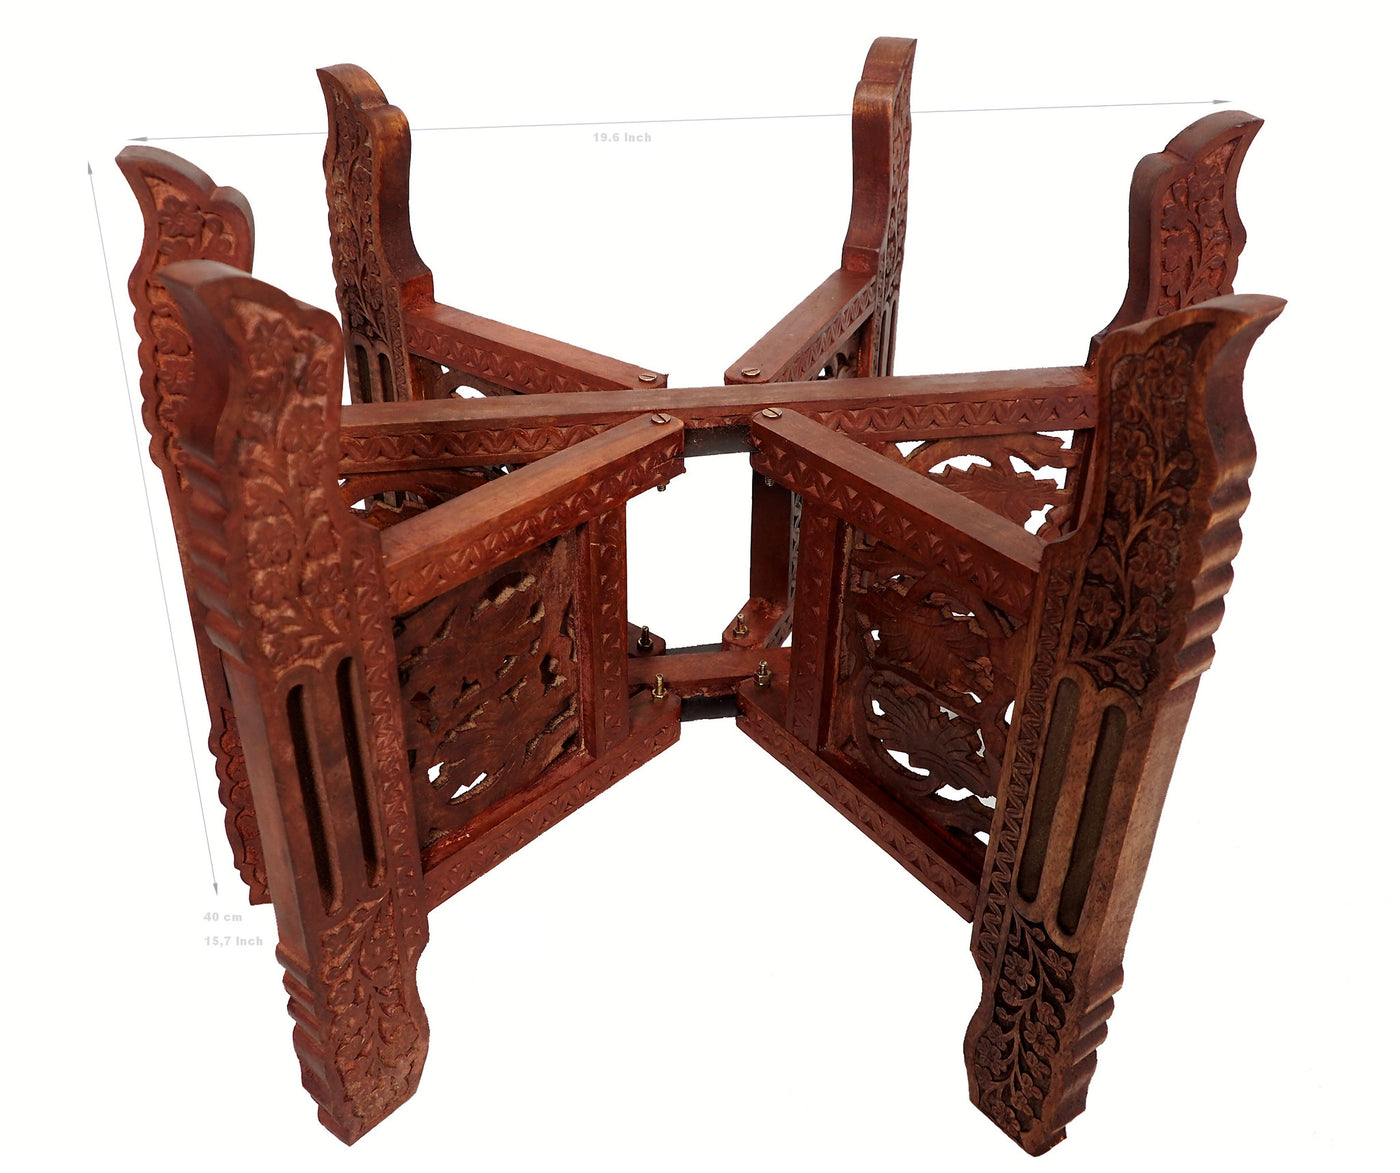 Orientalisches Holz Tischgestell Tische Orientbazar 50cm  